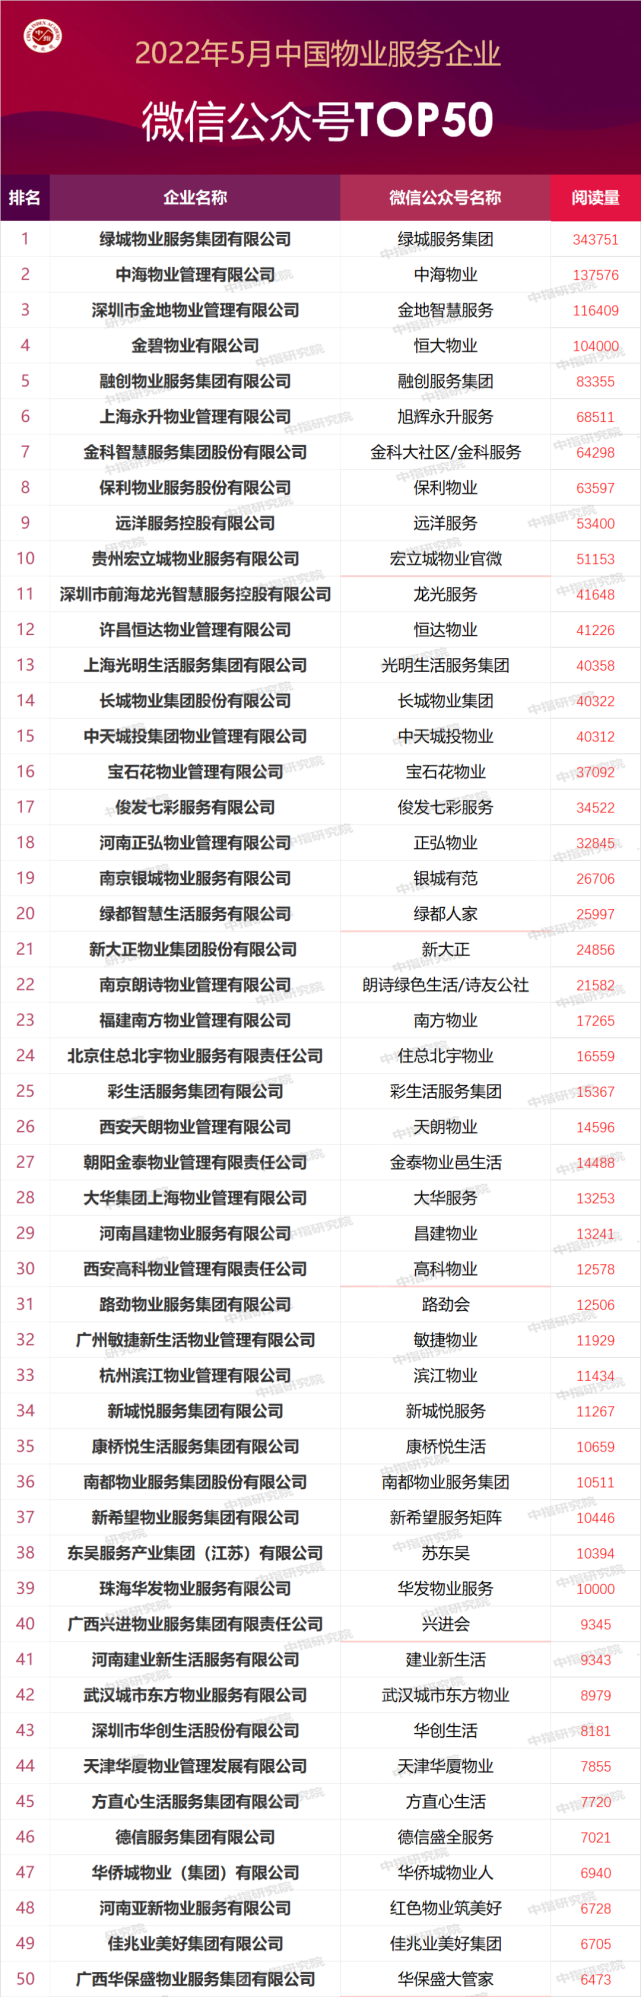 2022年5月中国物业服务企业品牌传播TOP50